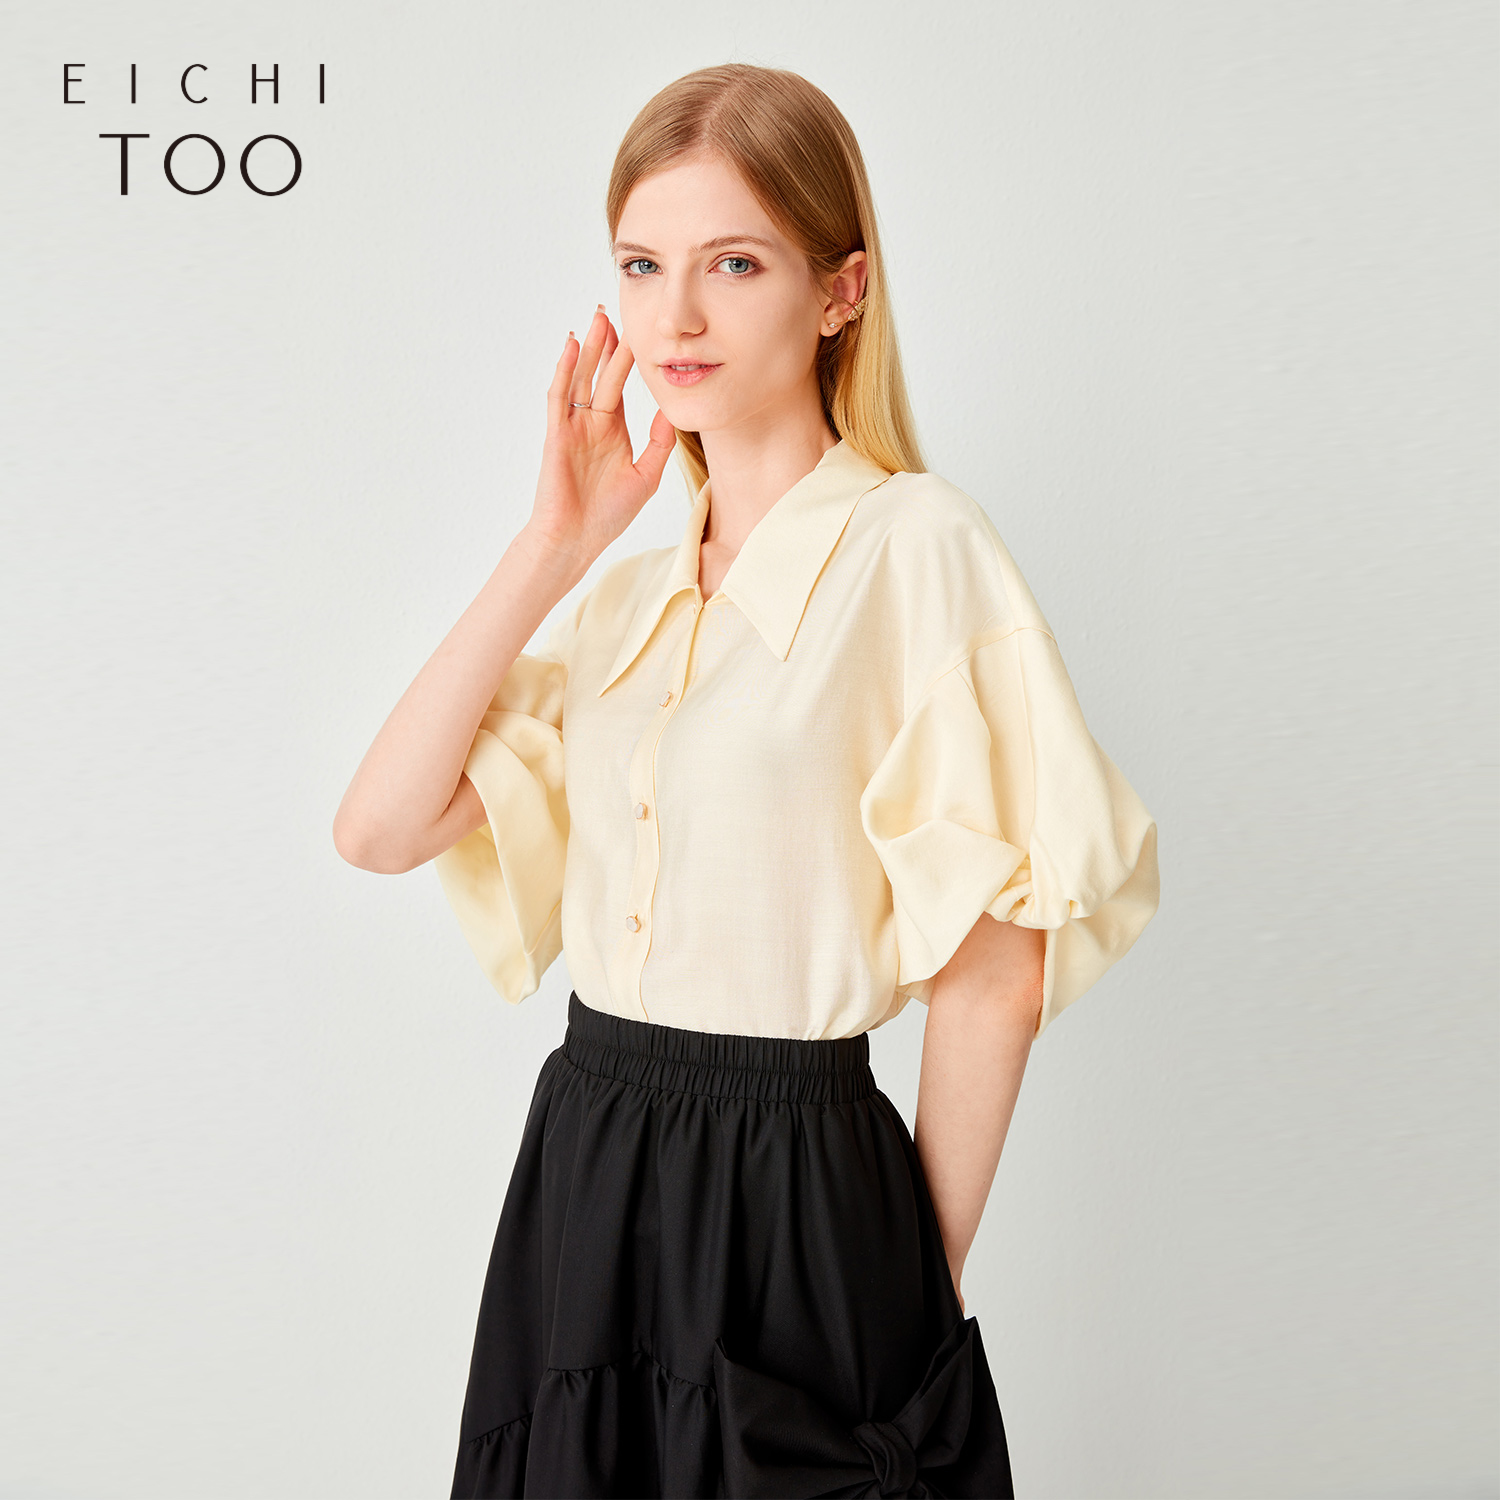 爱居兔夏季新品女装扭结袖型小众设计淡黄色短袖休闲衬衫-图0